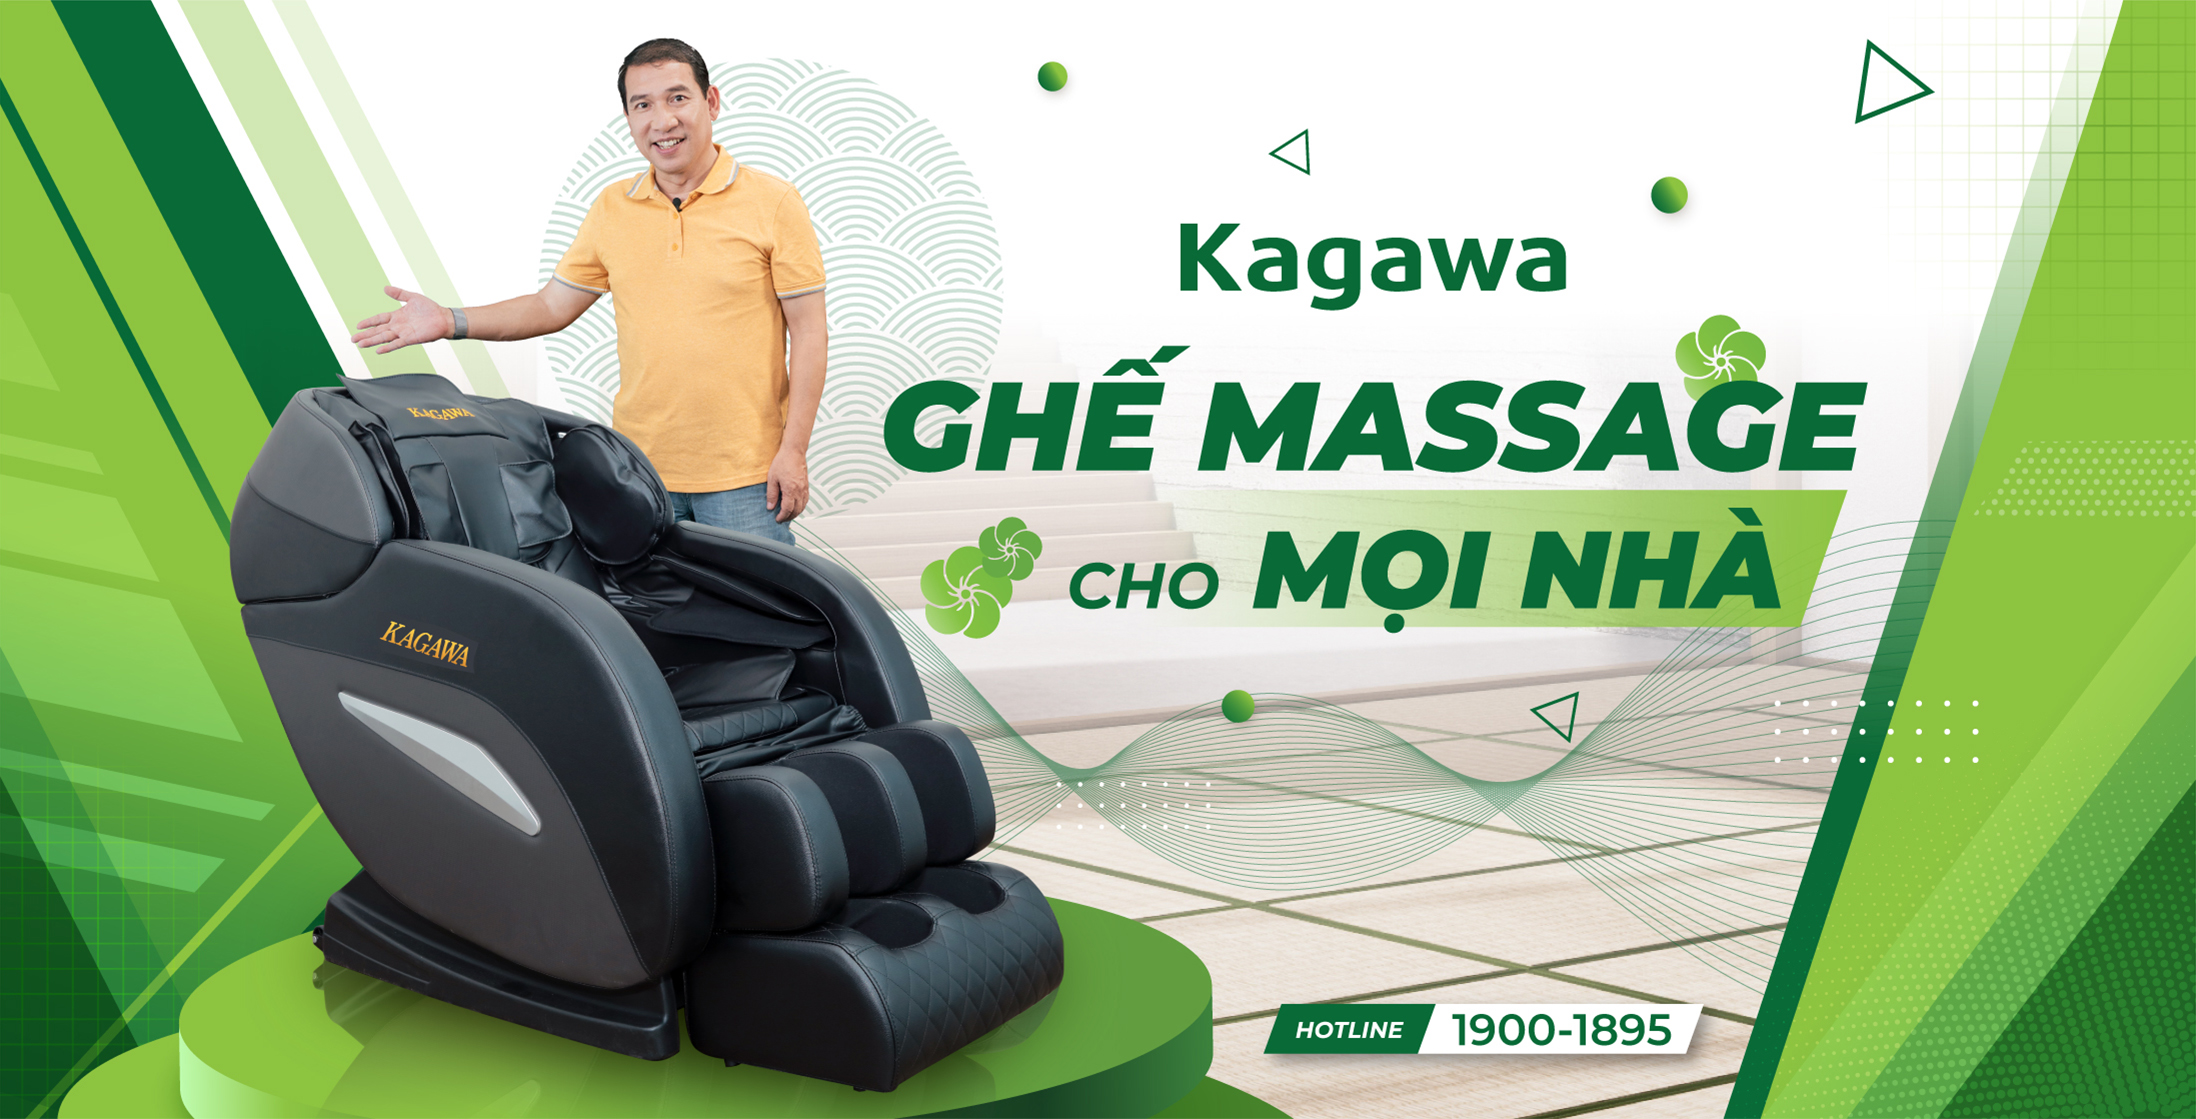 Kagawa - Ghế massage cho mọi nhà